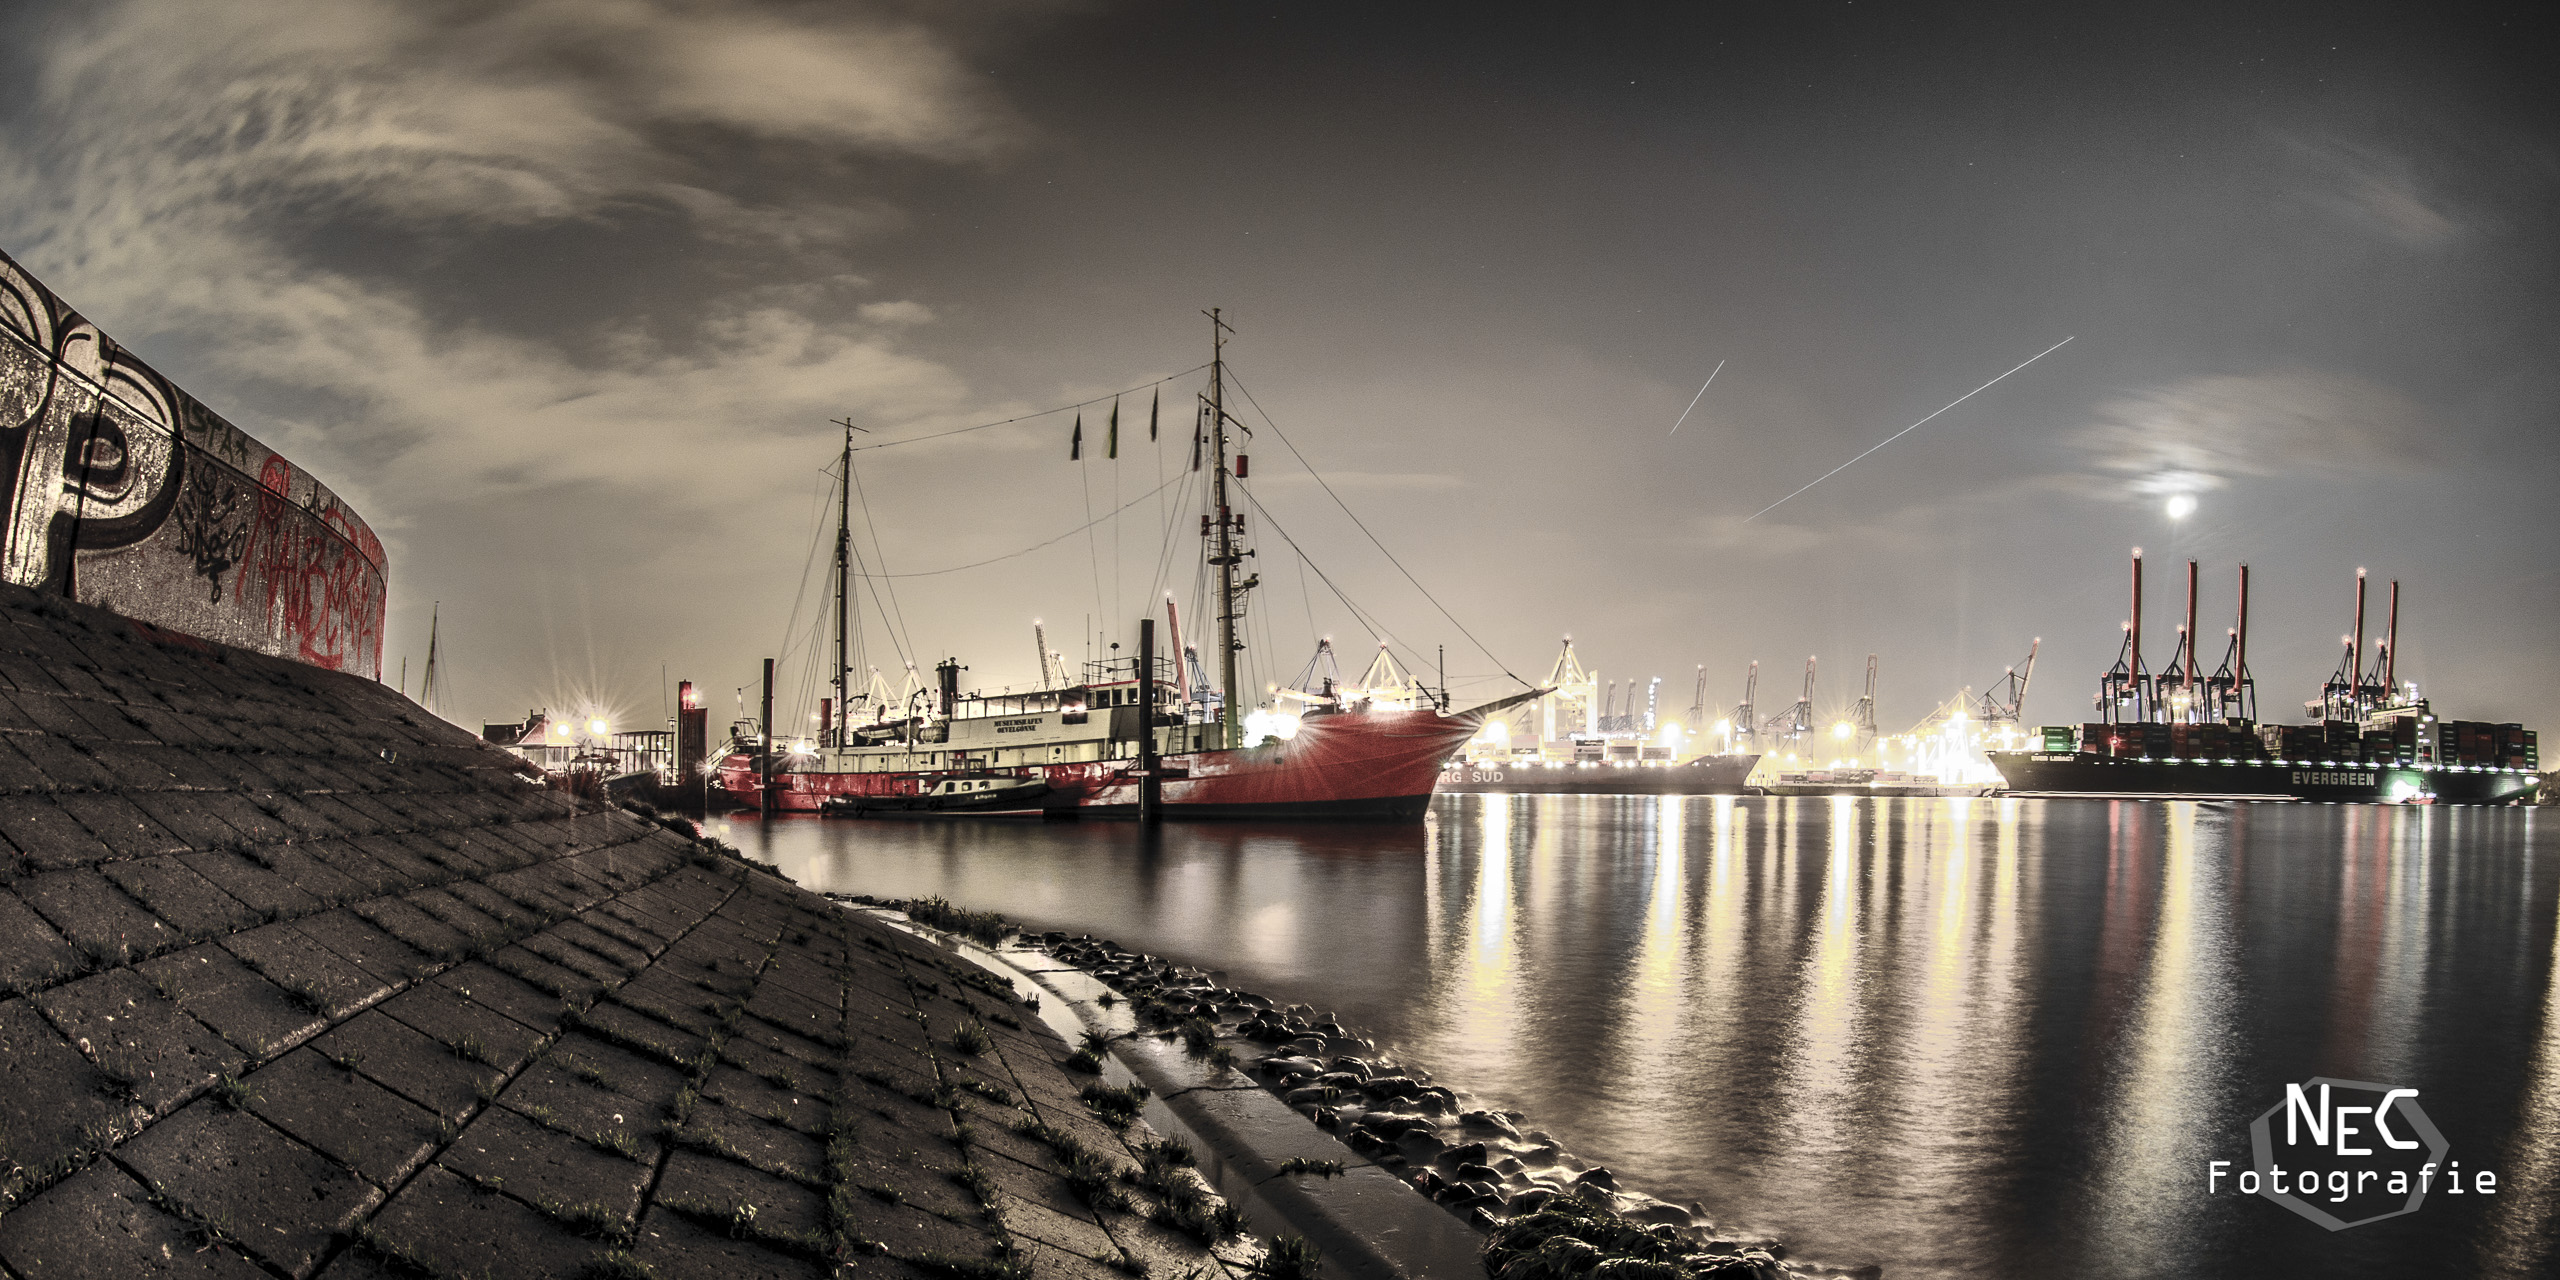 Övelgönne Museumshafen Hamburg bei Nacht, Elbe 3 Museumsschiff